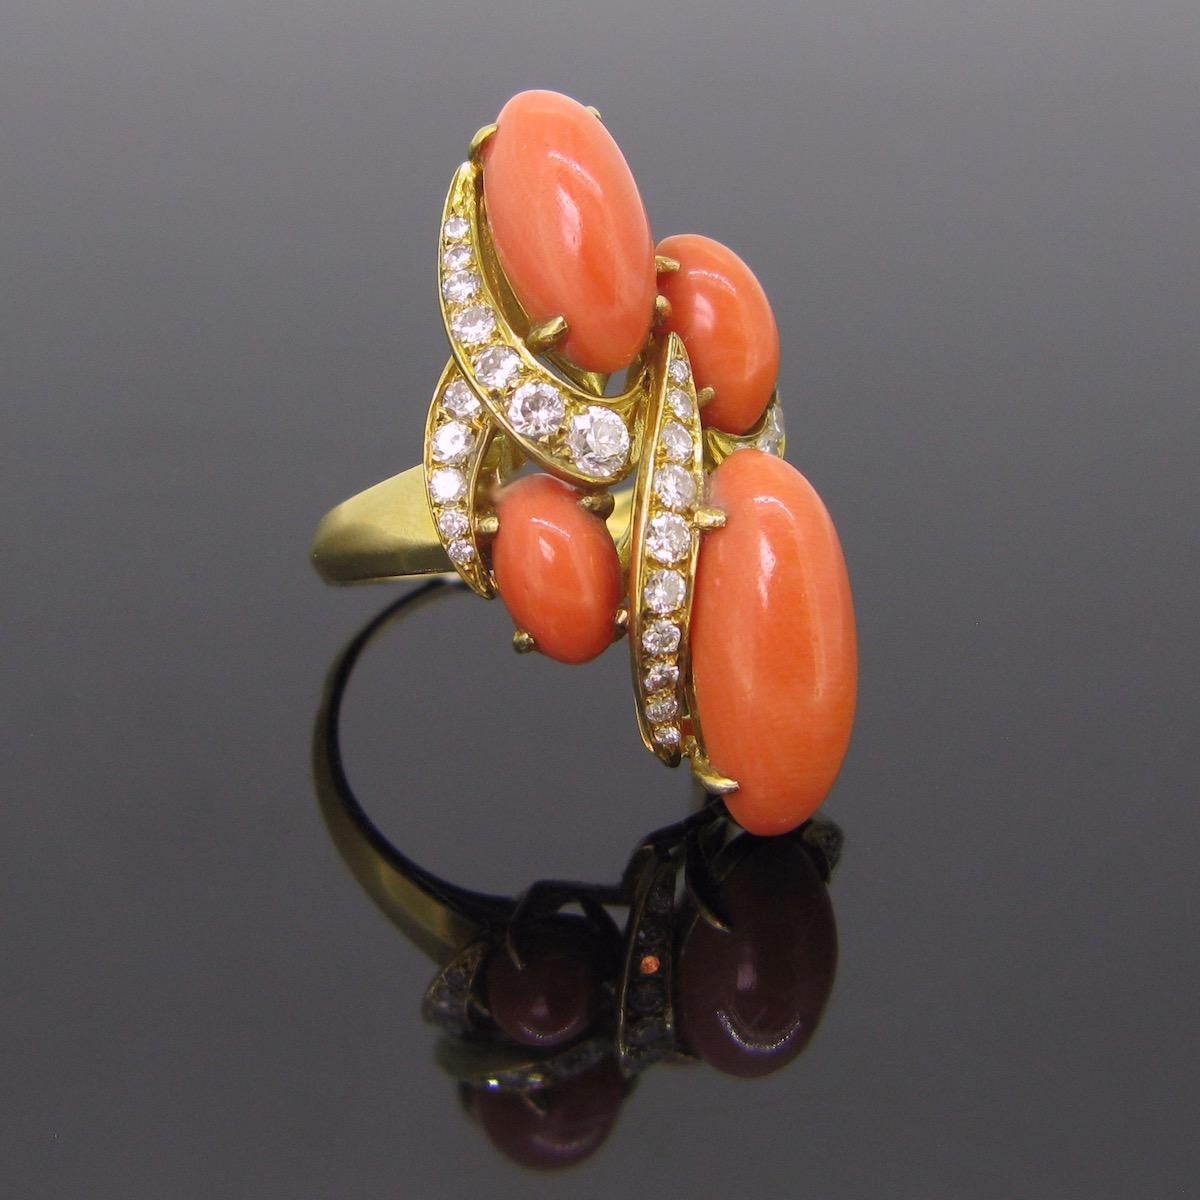 Ein schöner Ring aus Korallen und Diamanten. Dieser wurde in perfekter Handarbeit aus 18 Karat Gelbgold gefertigt und mit 4 Perlen aus polierten Korallen verziert. Diese sind in sehr gutem Zustand. Sie haben eine schöne rötlich-orange Farbe. Die